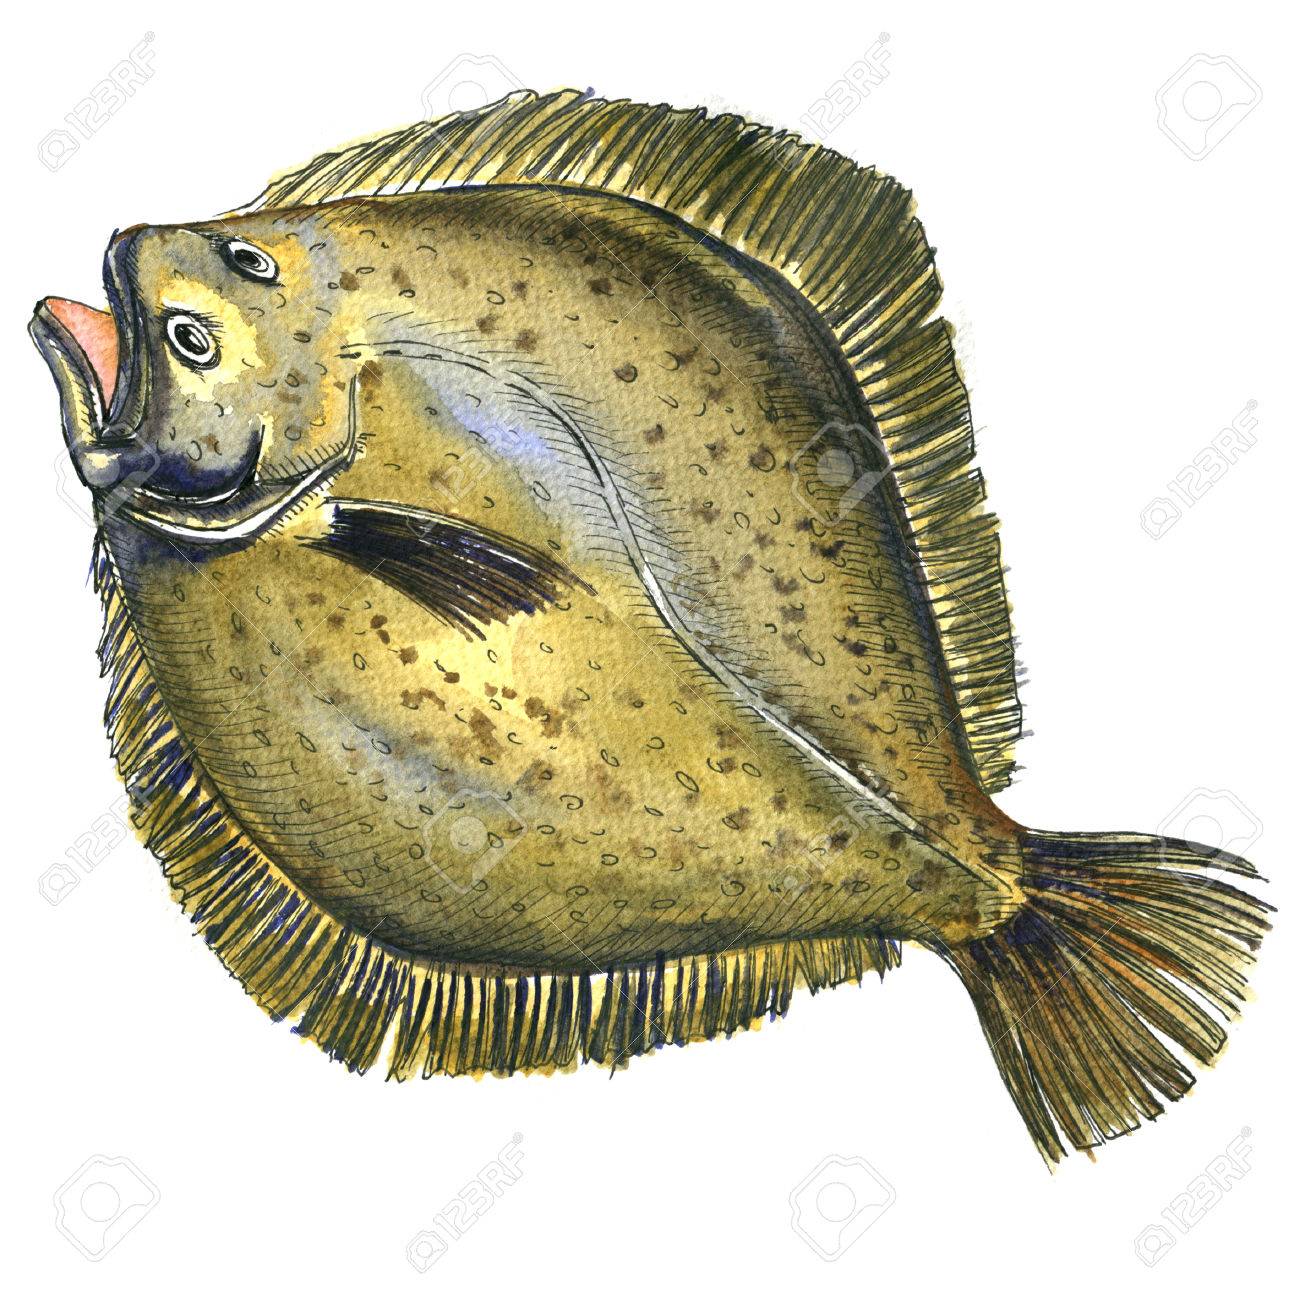 Whole Fresh Raw Plaice Fish Flatfish Flounder Isolated